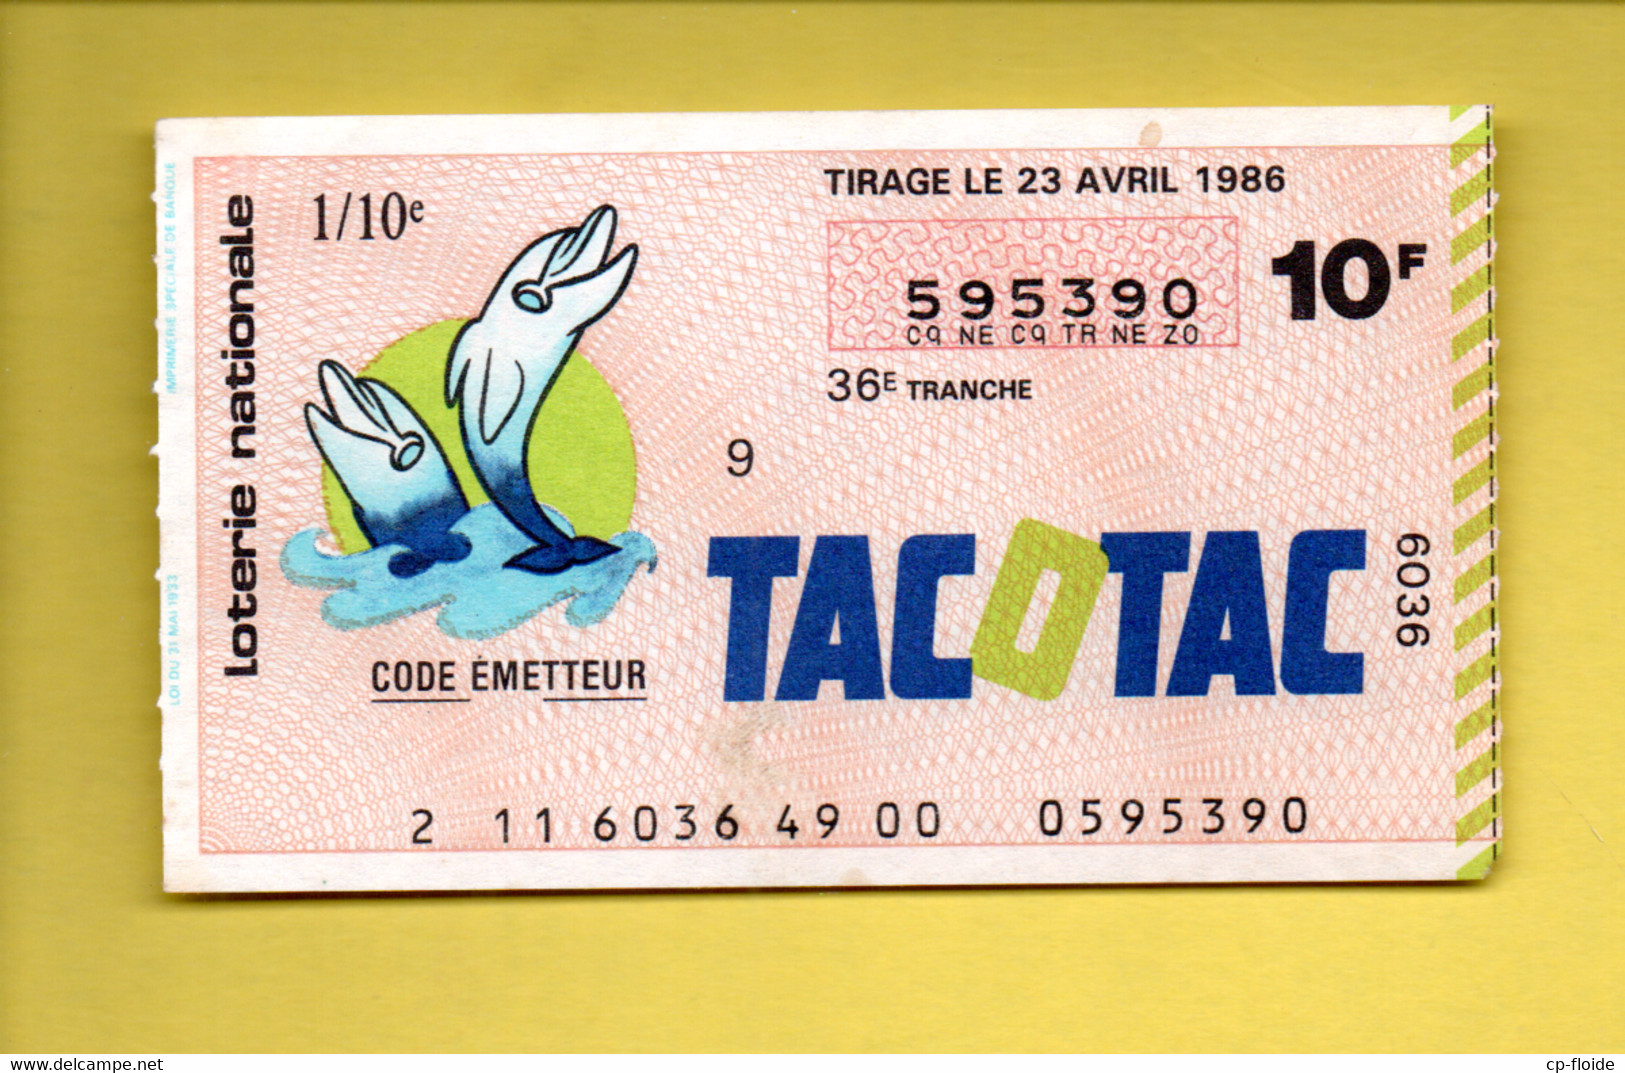 Billets de Loterie - FRANCE . LOTERIE NATIONALE .  TACOTAC  . TIRAGE 23  AVRIL 1986 - Ref. n°35327 